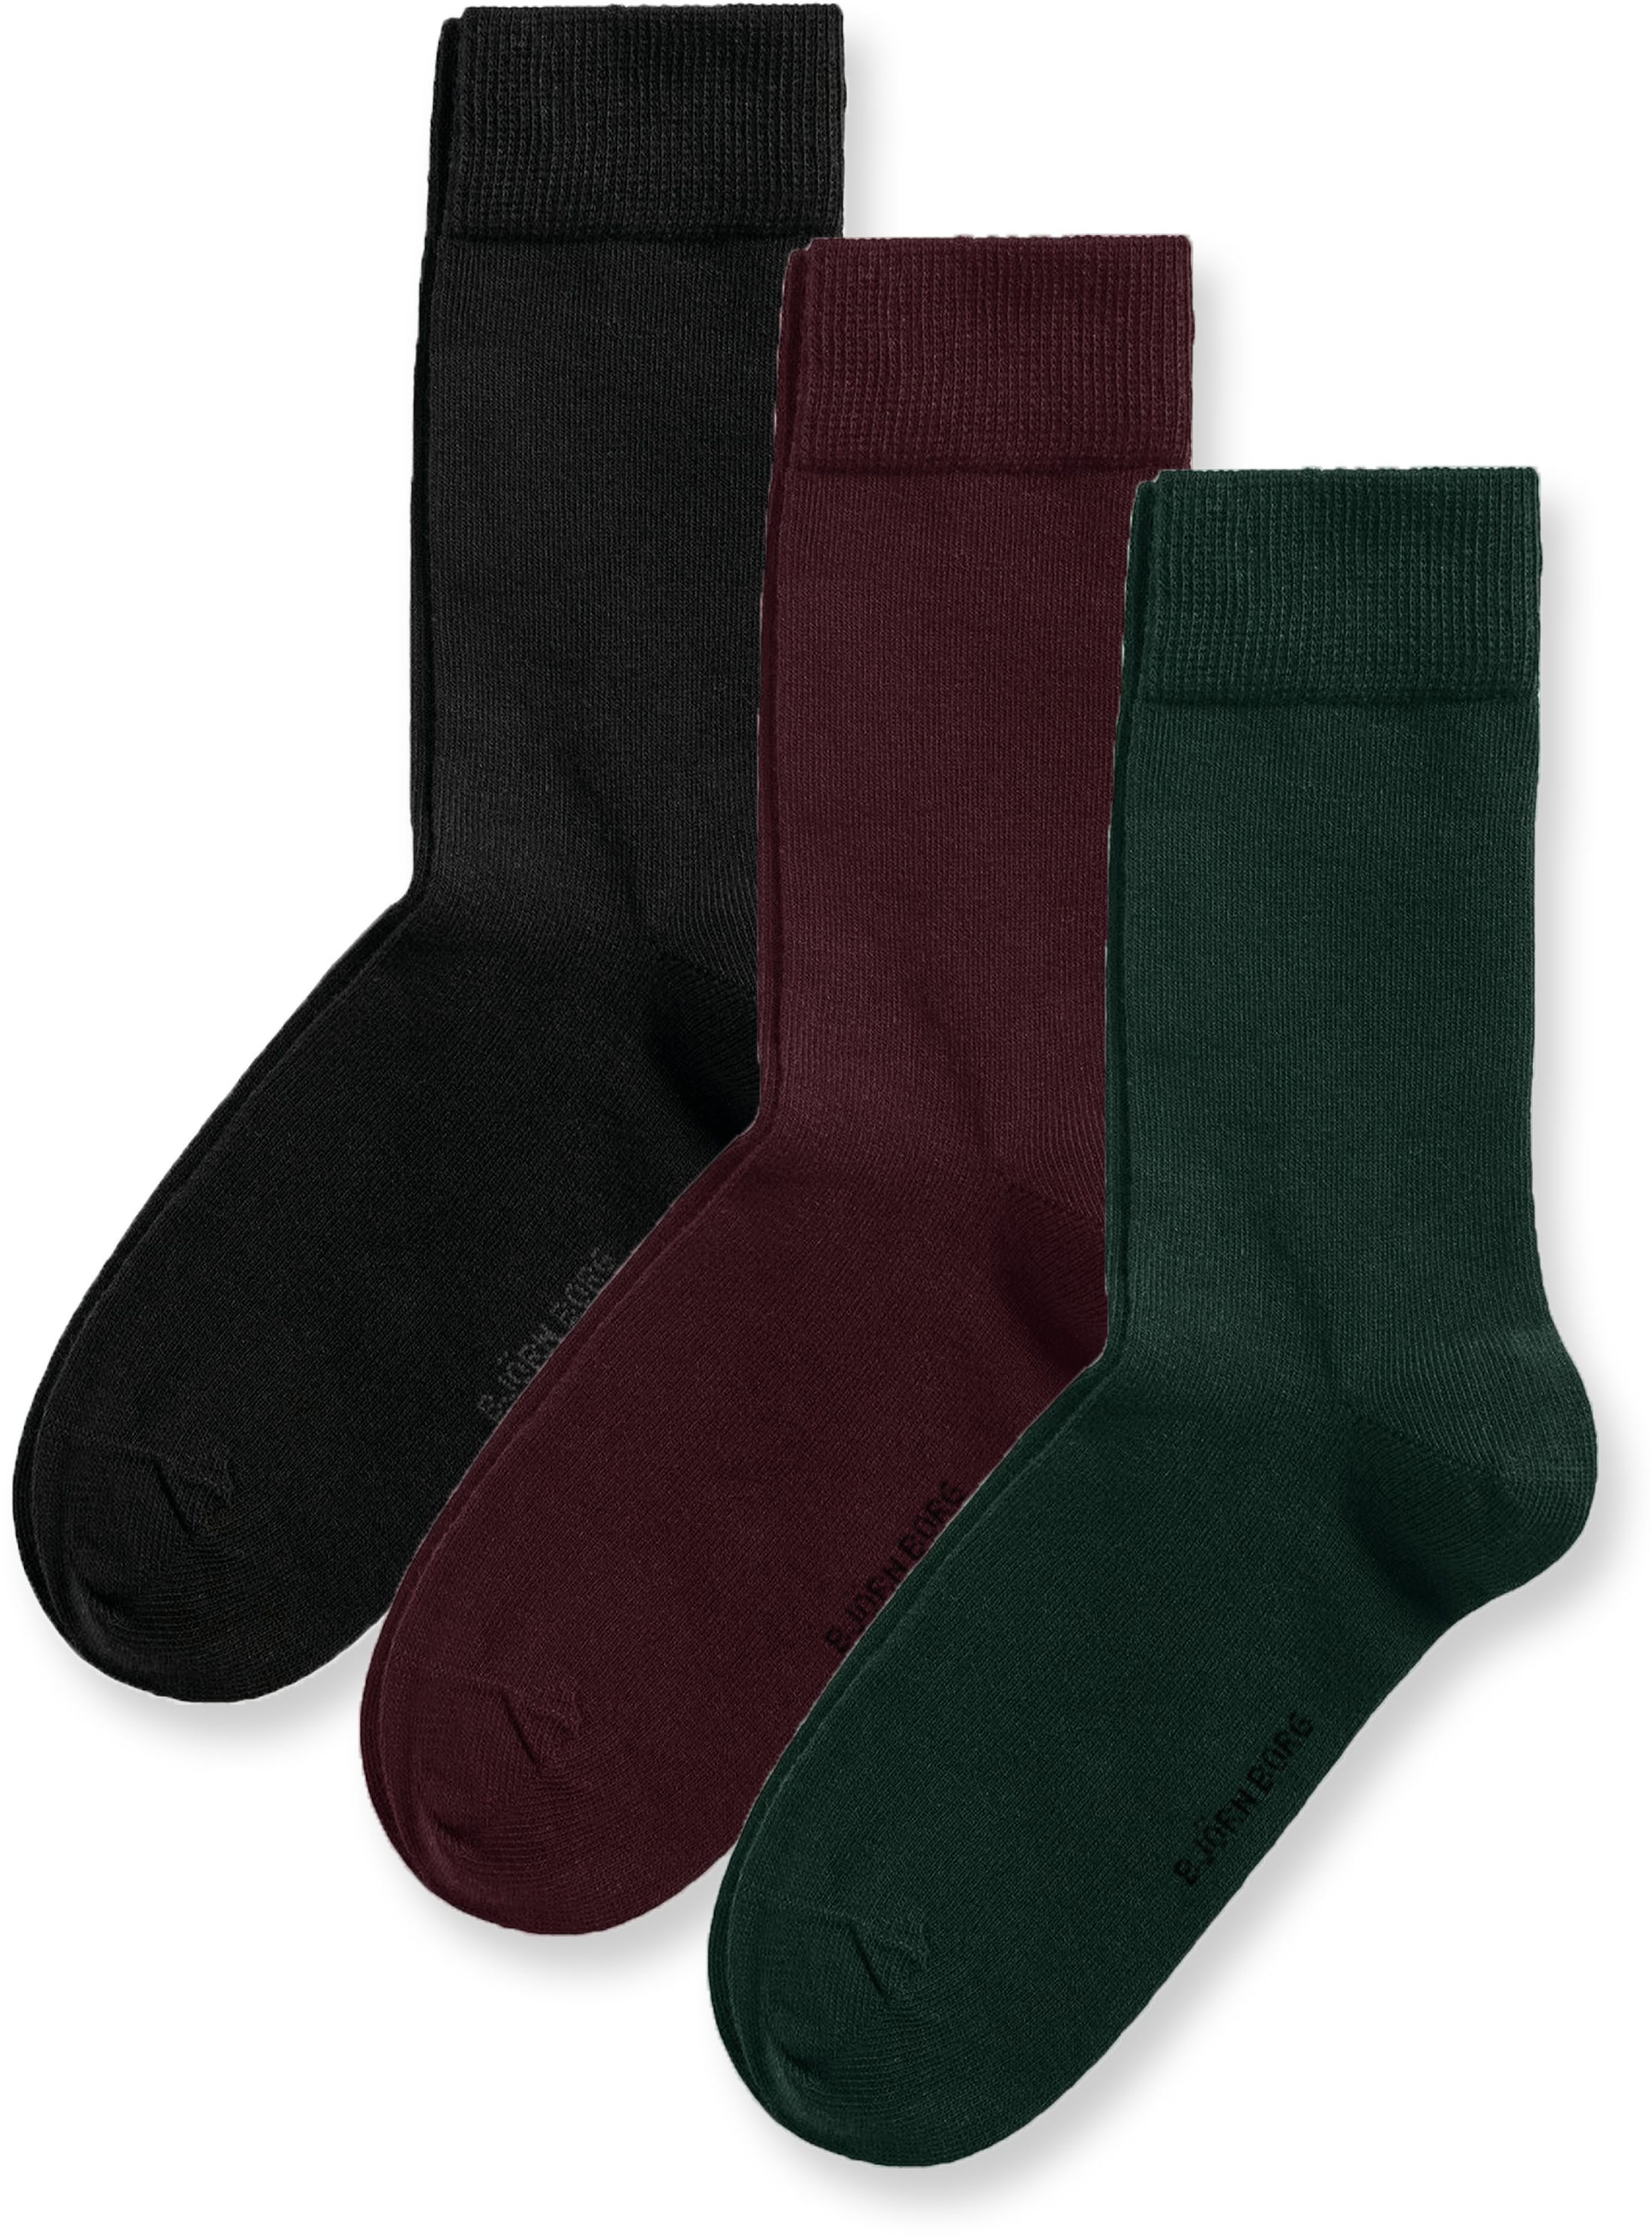 Bjorn Borg Core 3-Pack Socks Multicolour Green Burgundy Black Dark Green size 41-45